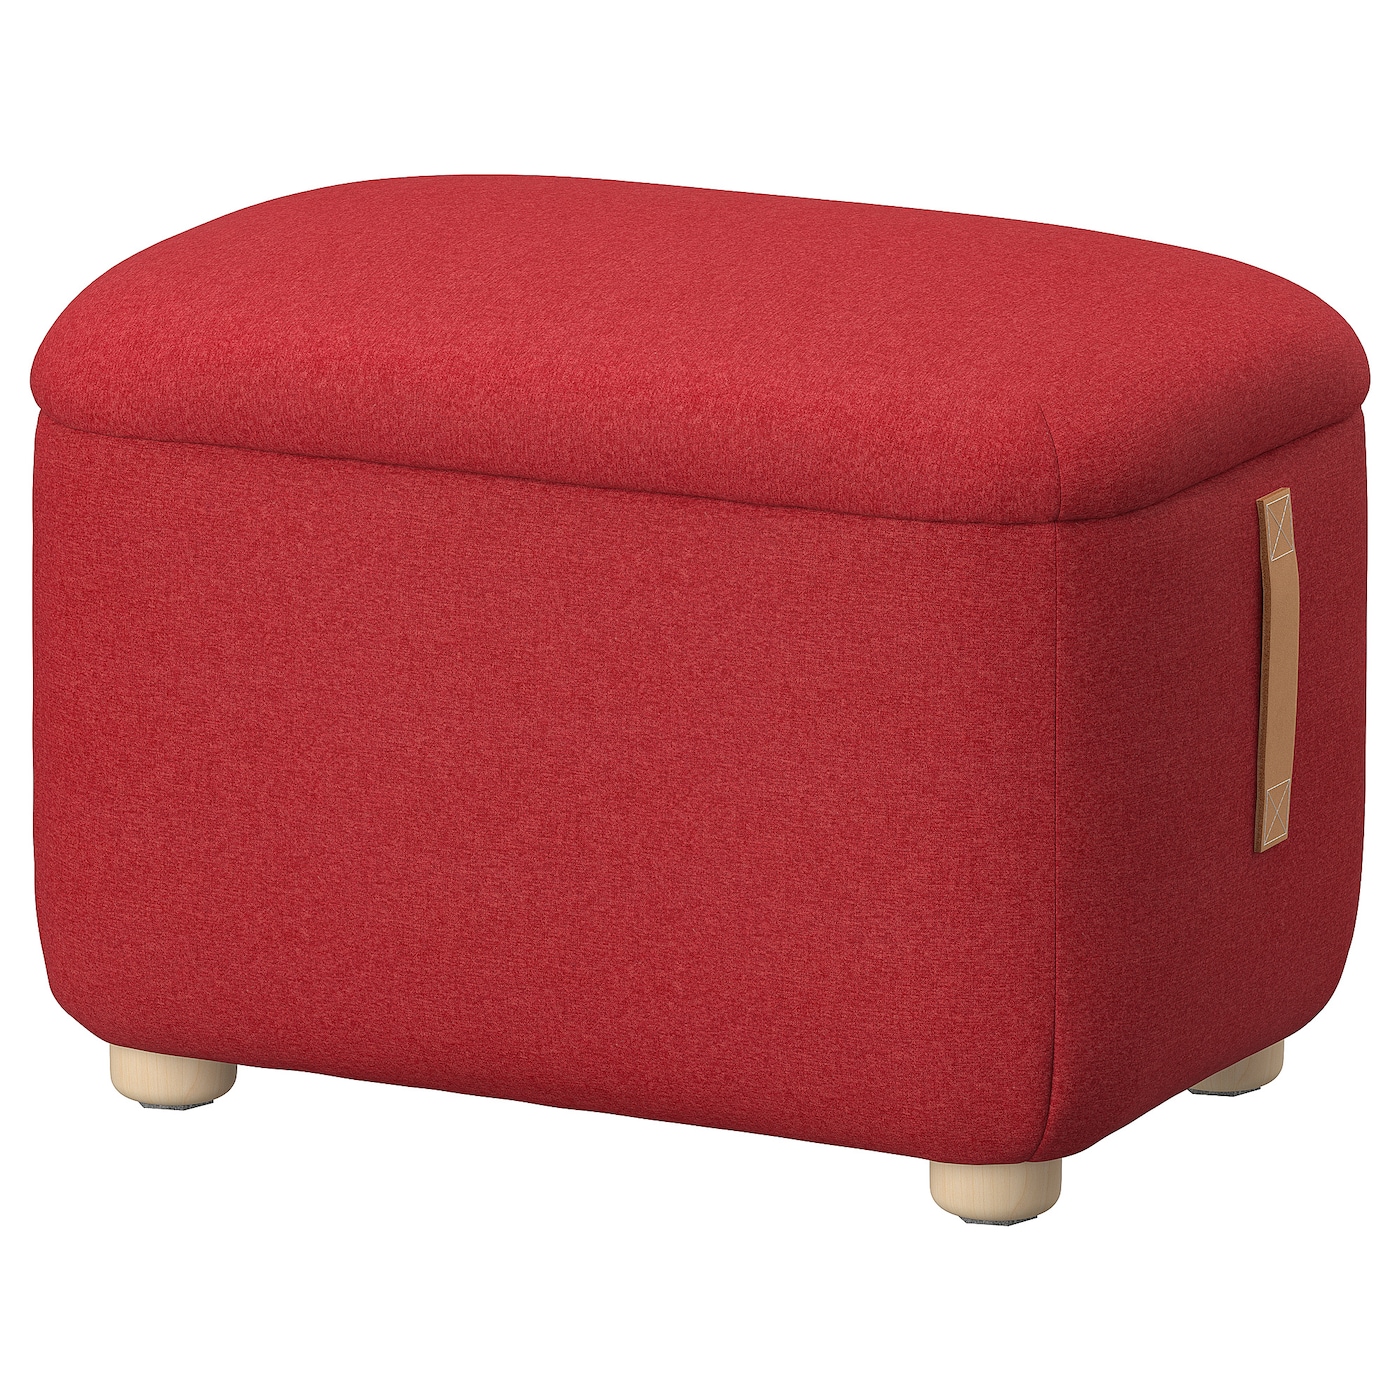 ОСКАРШАМН Кресло с местом для хранения, Тонеруд красный OSKARSHAMN IKEA